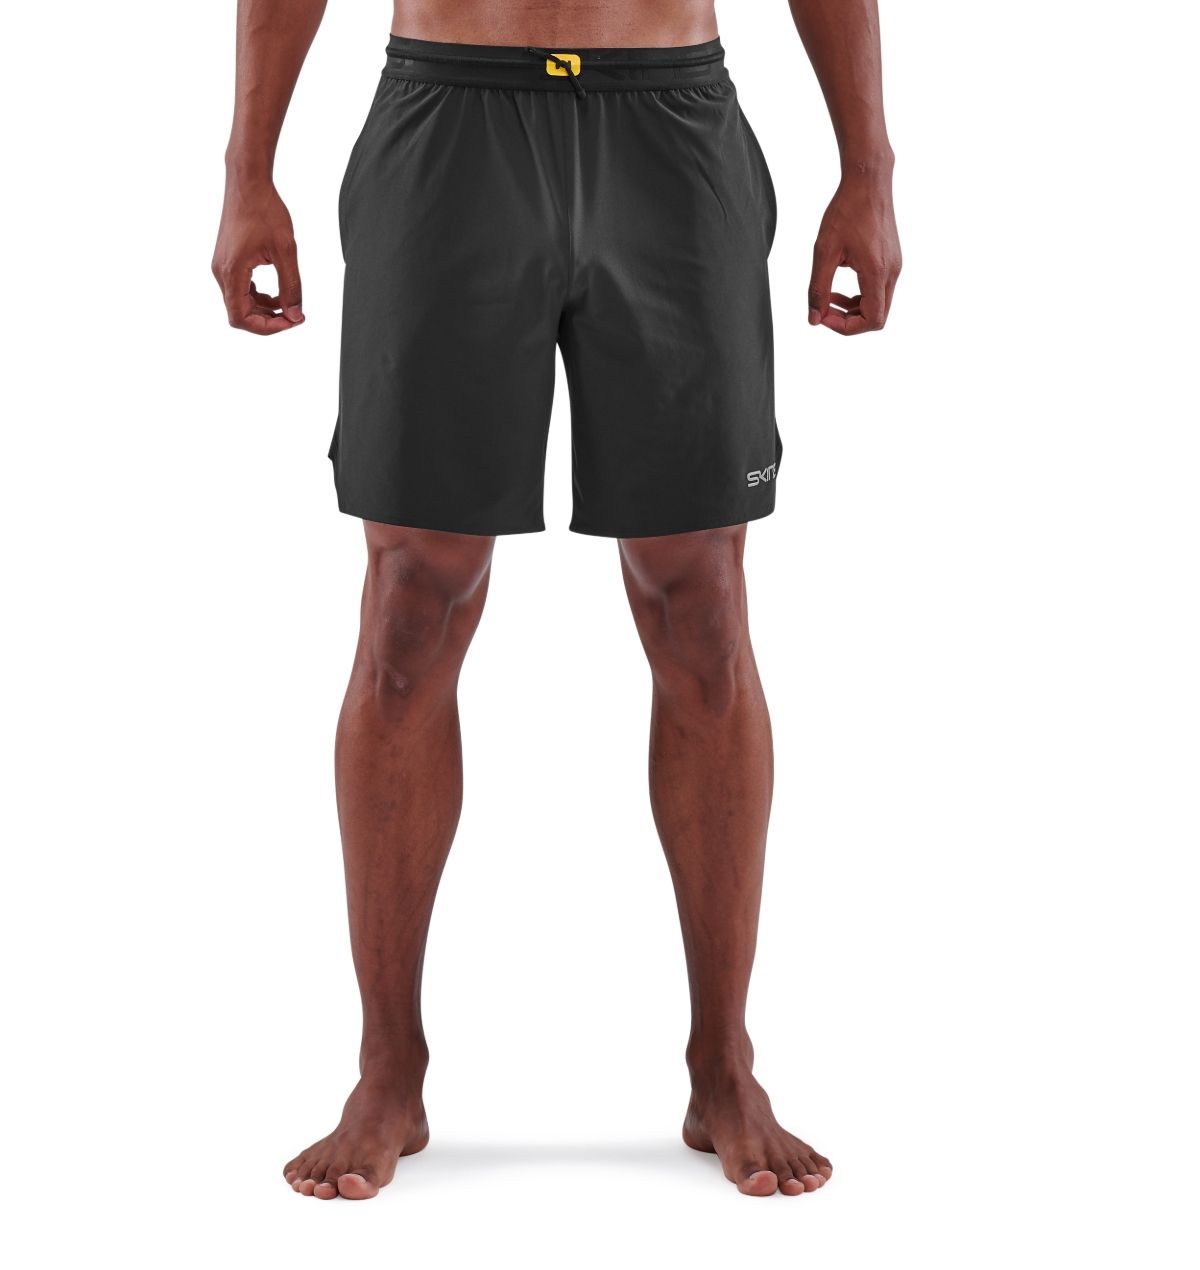 ST0150071 Мужские шорты для кроссфита SKINS серия 3 (BLACK Чёрный L)